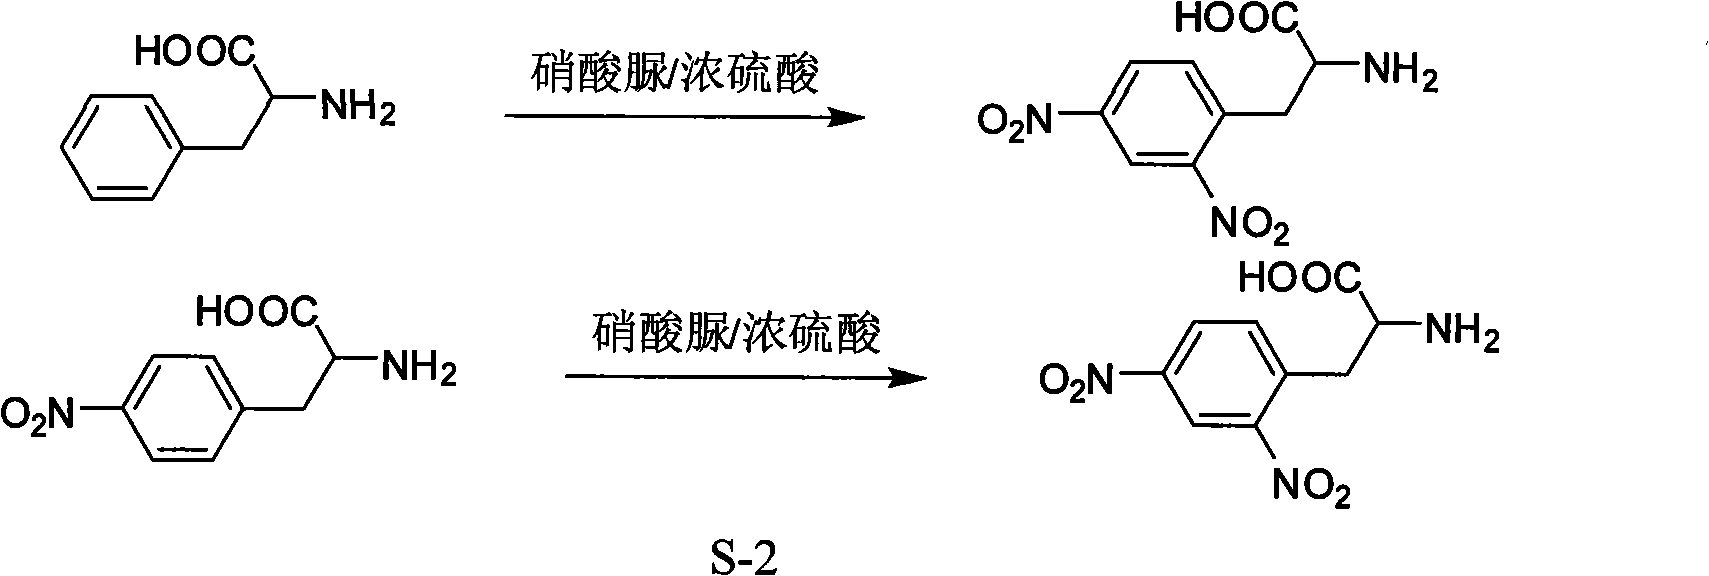 Method for synthesizing L-2,4-dinitrophenylalanine